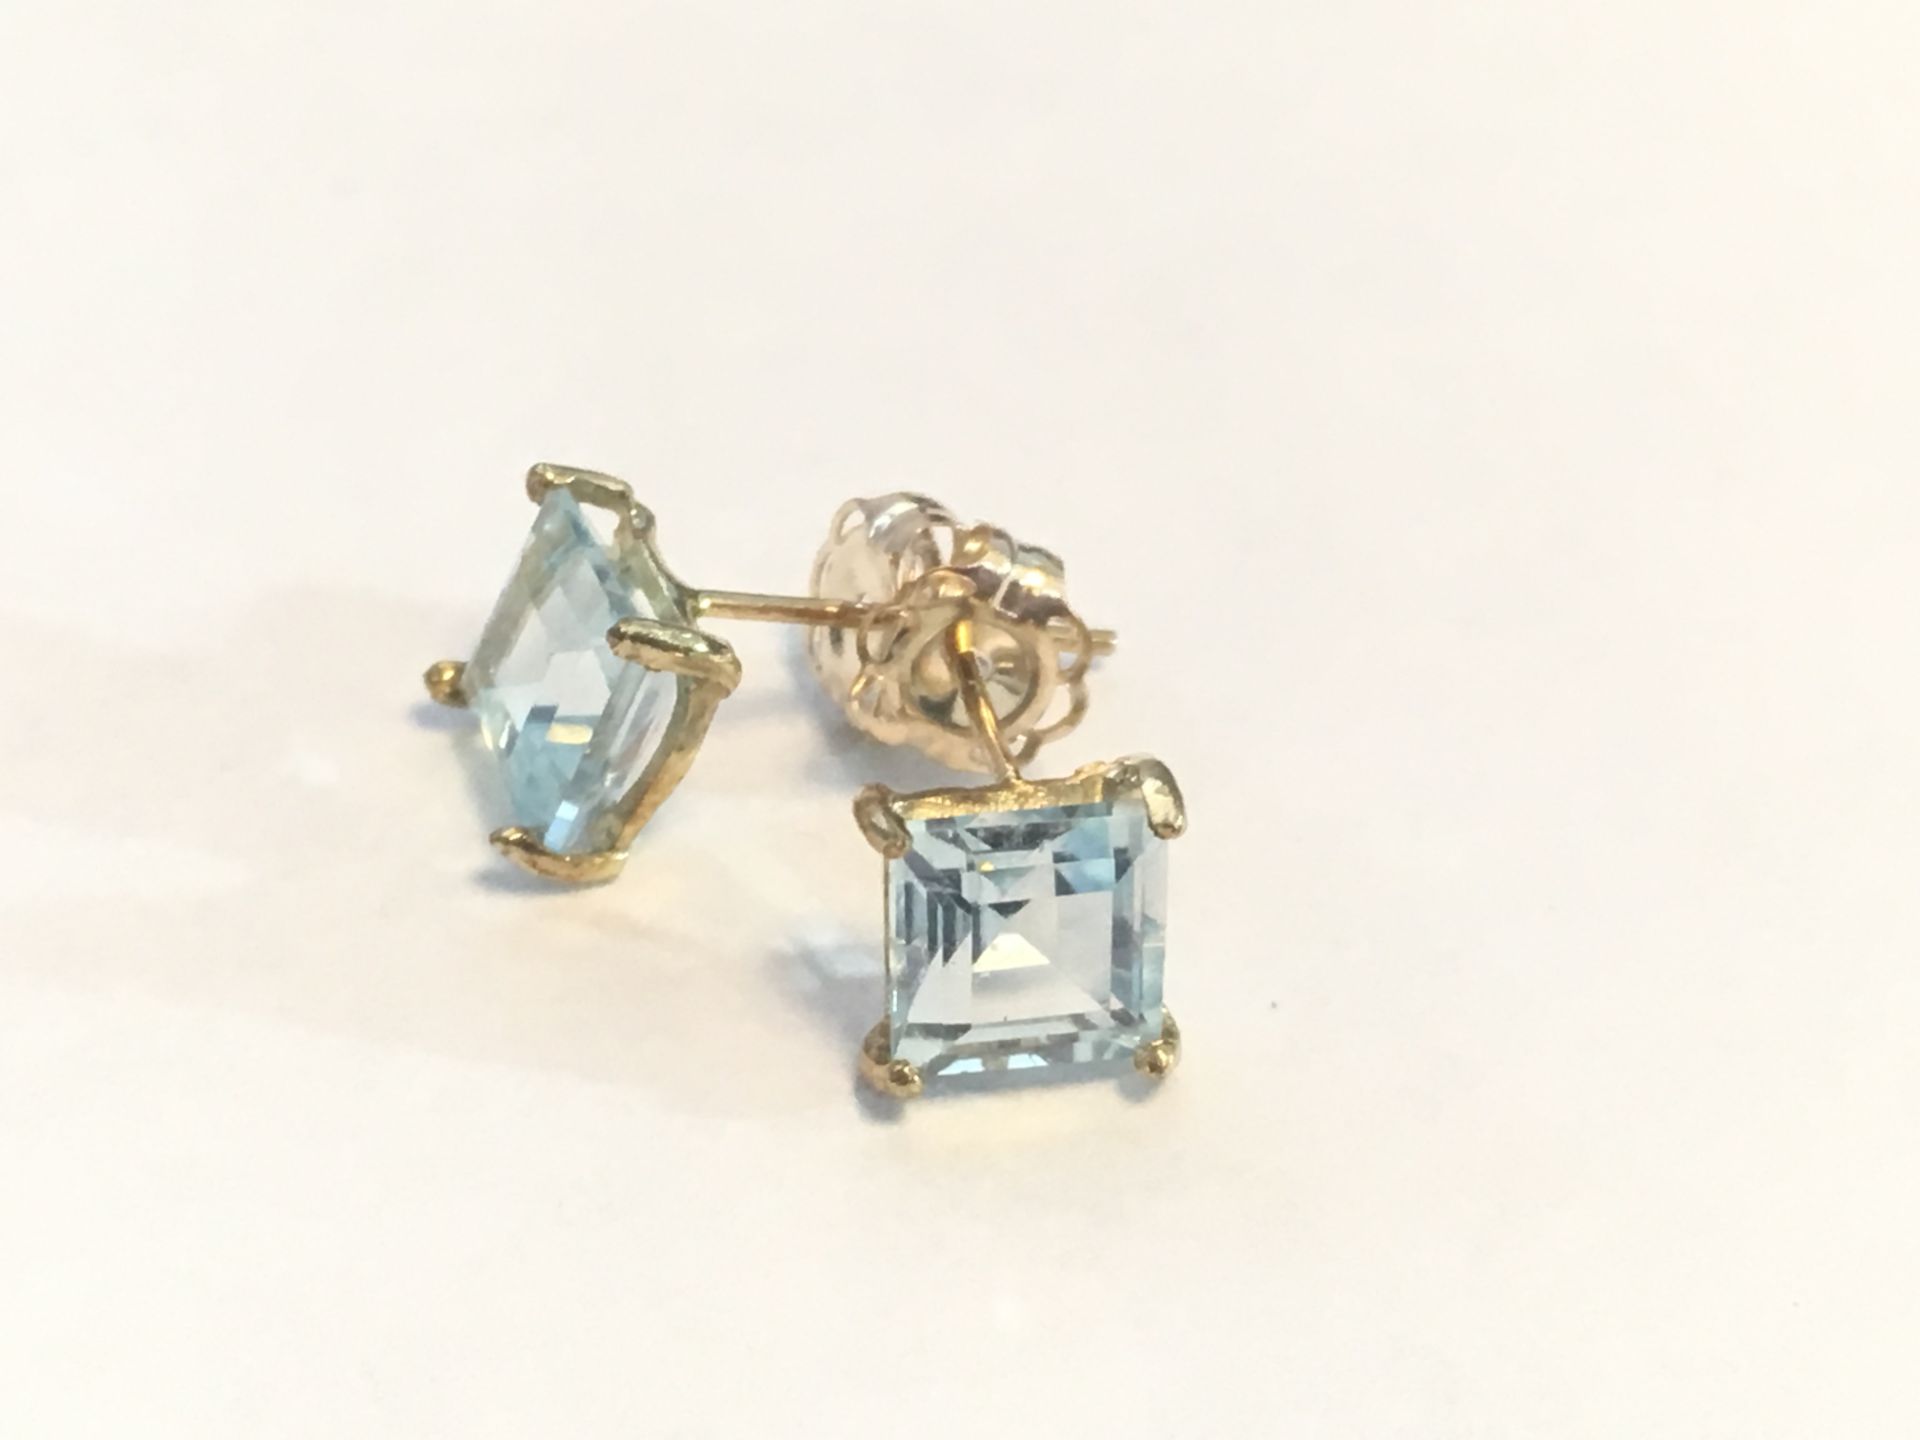 10k Gold, Blue Topaz Earrings - Image 2 of 2